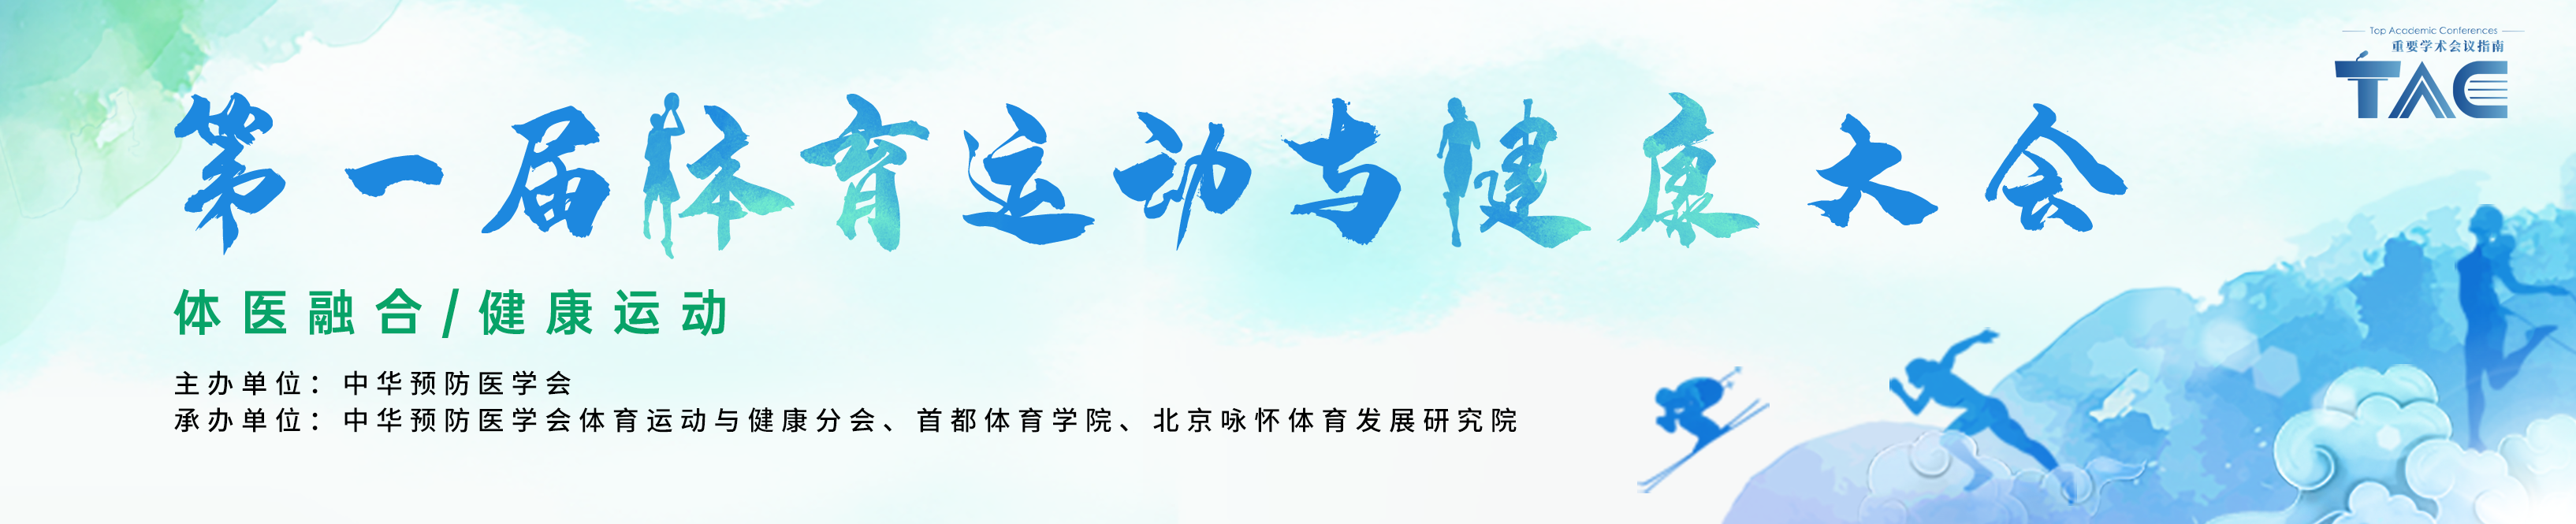 第一届中国体育运动与健康大会